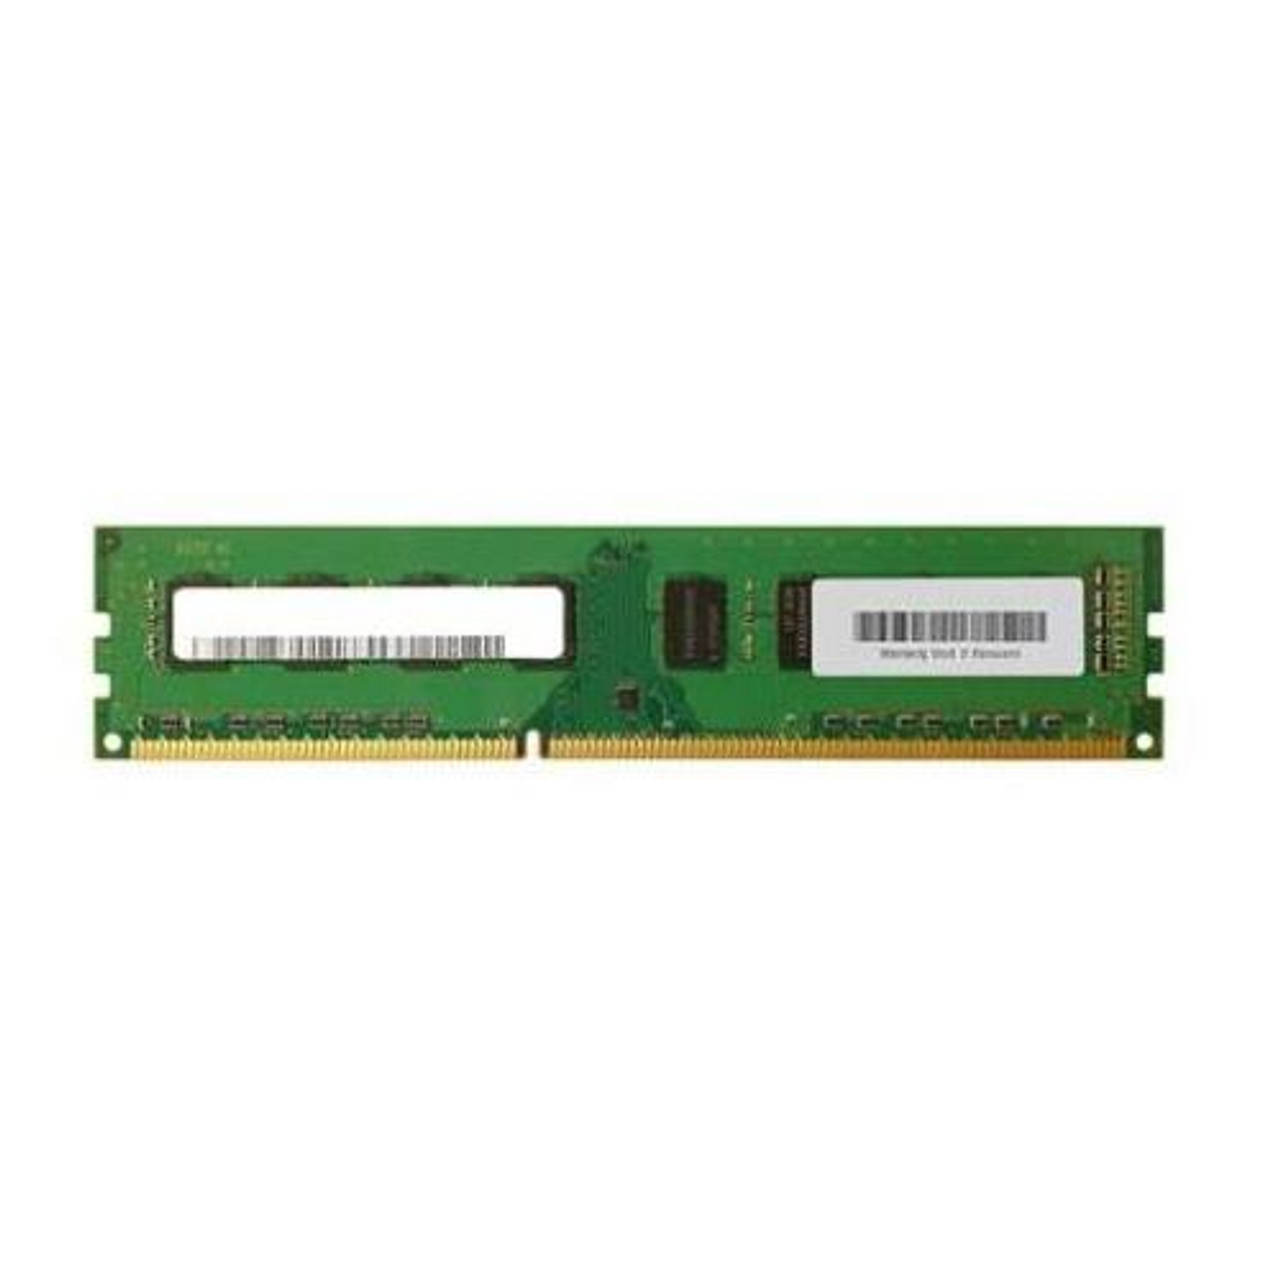 172707-003 Compaq 8MB EDO 60ns 72-Pin DIMM Memory